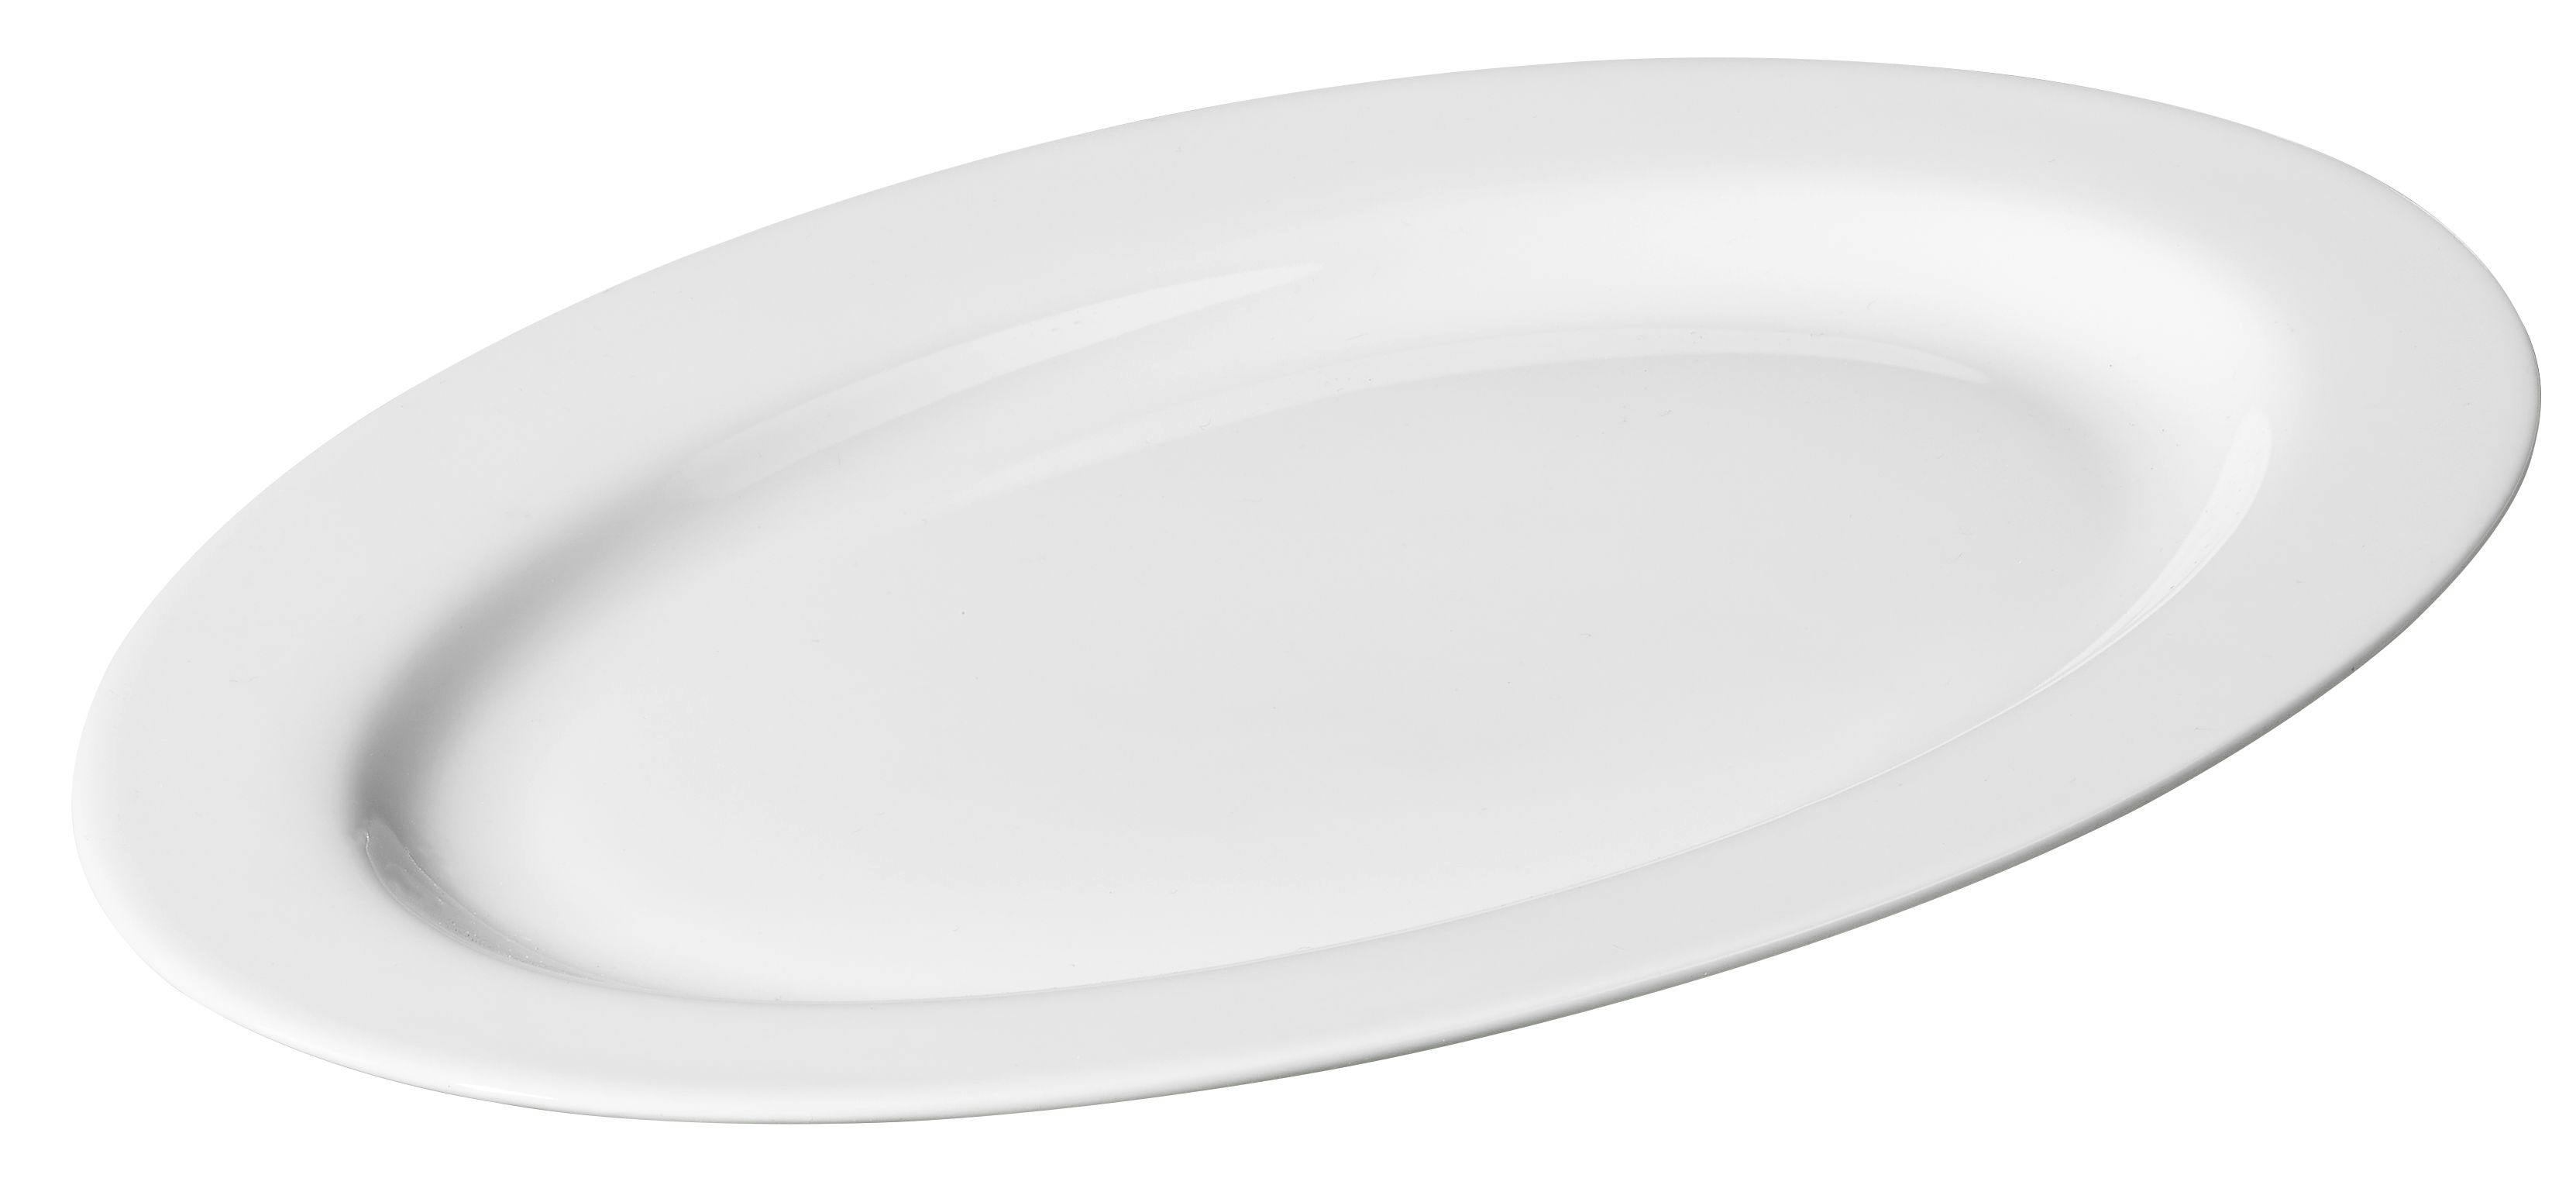 Living home offerta servizio piatti in forma ovale in vetro opalino bianco  lucido per 12 persone 36 pezzi con piatti piani, fondi, frutta, resistente  in lavastoviglie e microonde mod 32568 : 